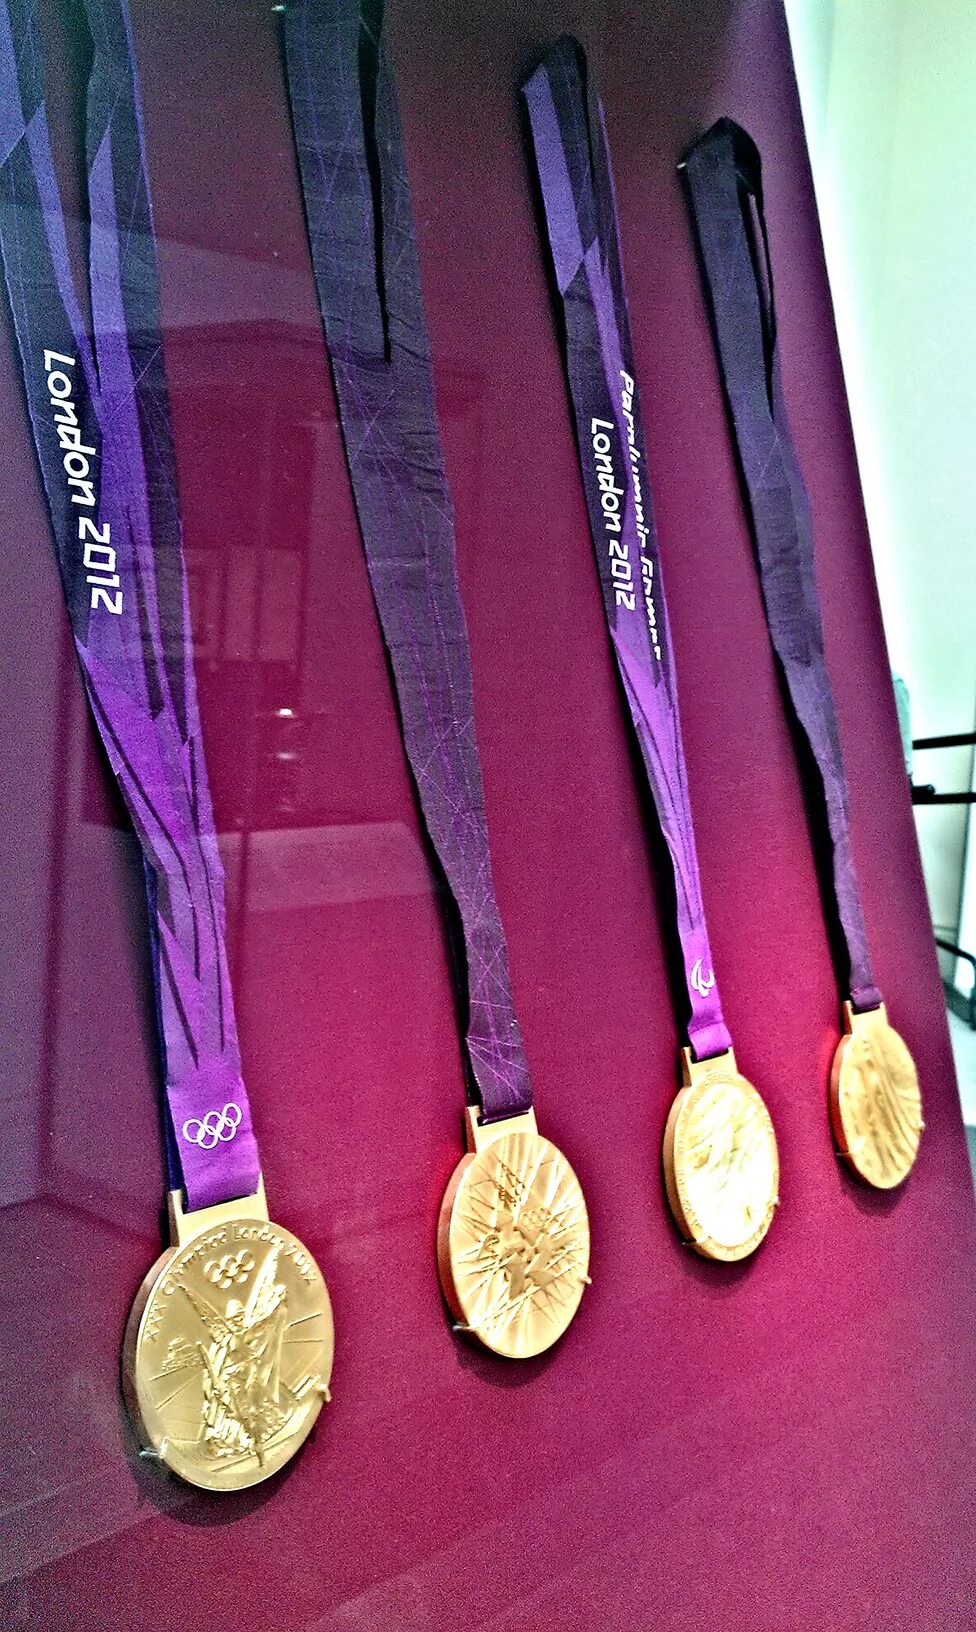 Medal 2012. Олимпийская медаль Лондон 2012. Медали олимпиады 2012 Лондон. Олимпийская медаль 2012 года. Золотые медали Олимпийских игр 2012 года.